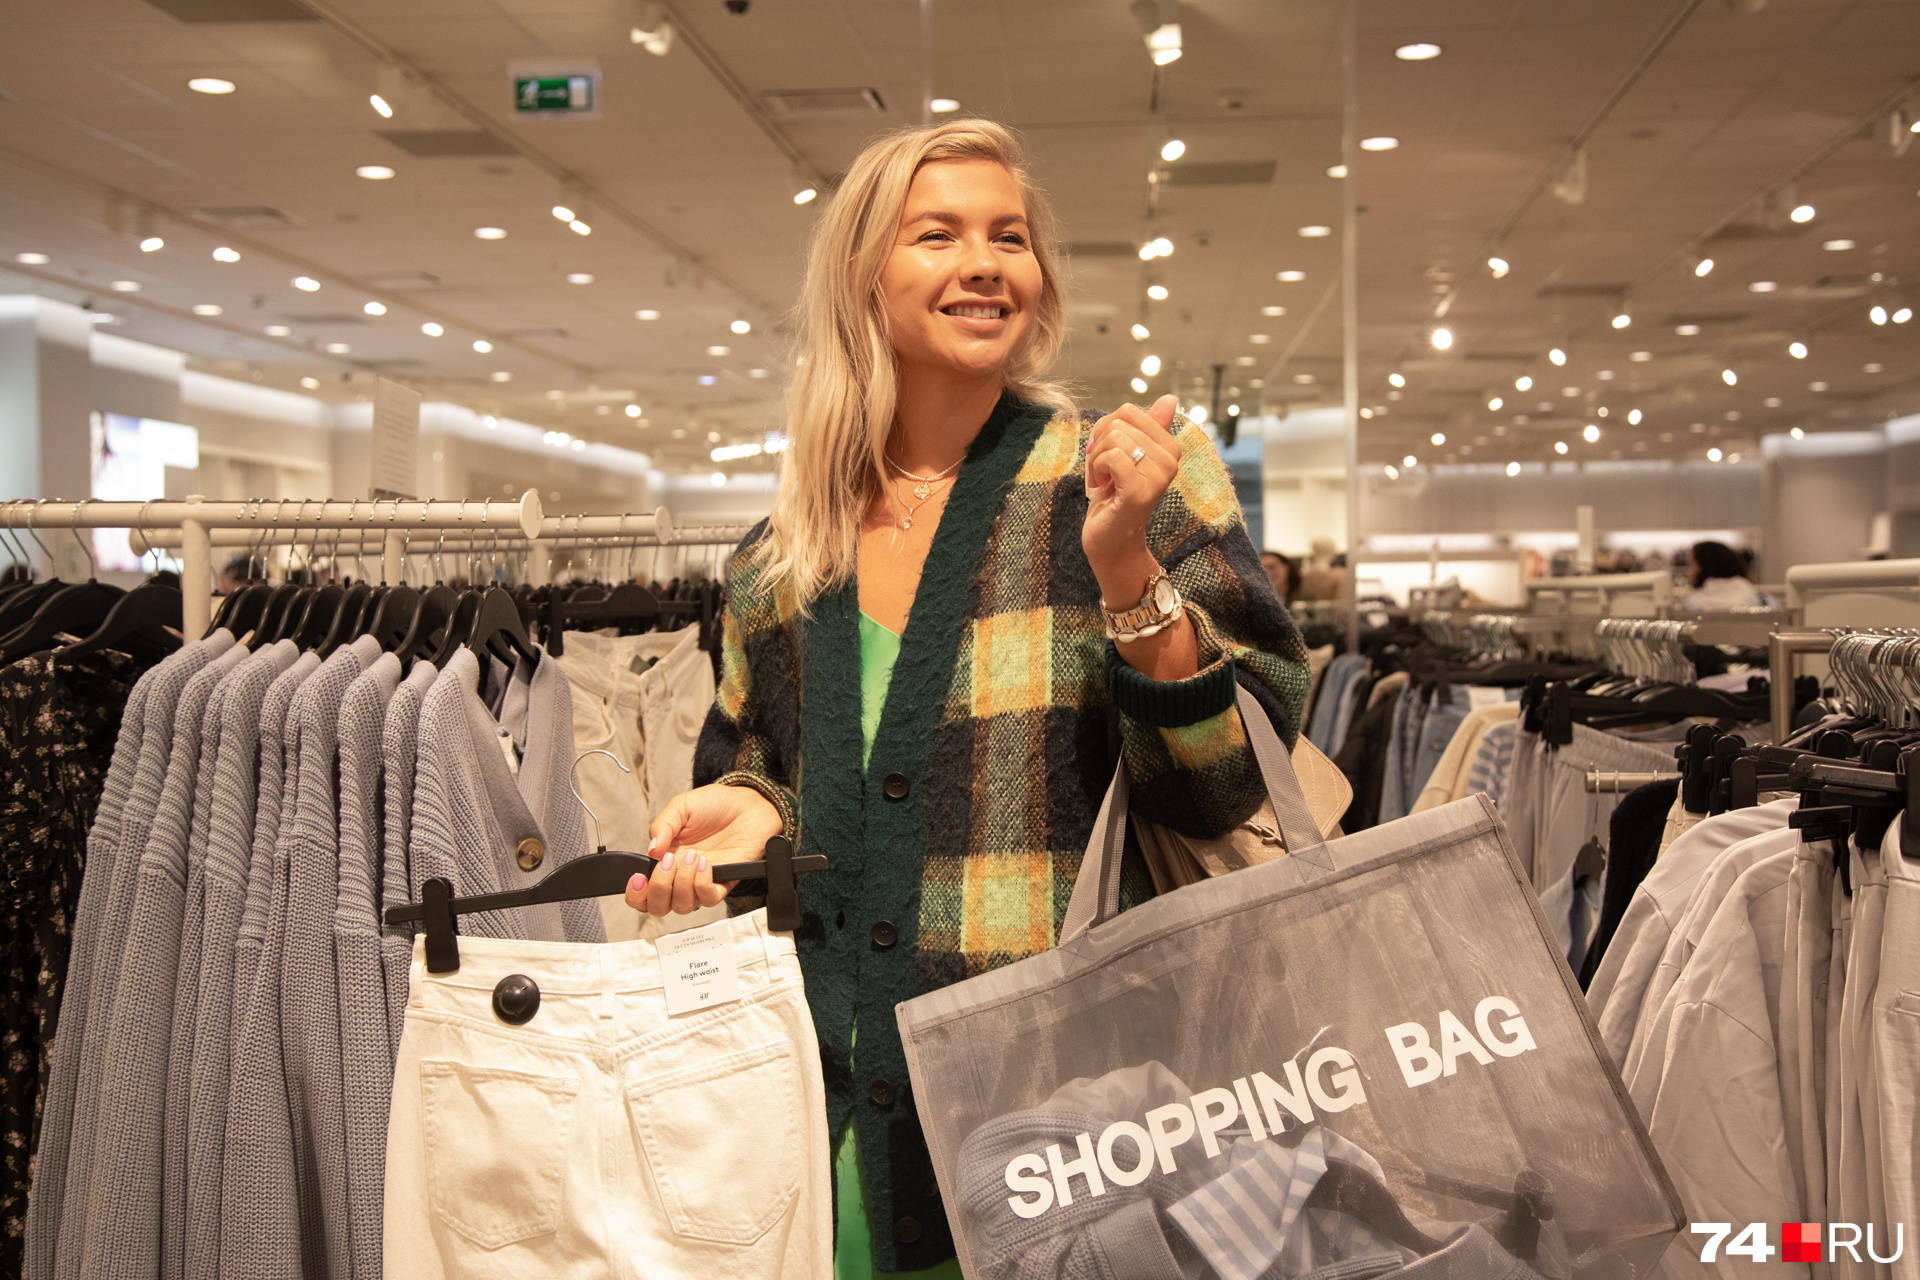 Мария светится от счастья на шопинге в магазине шведского бренда